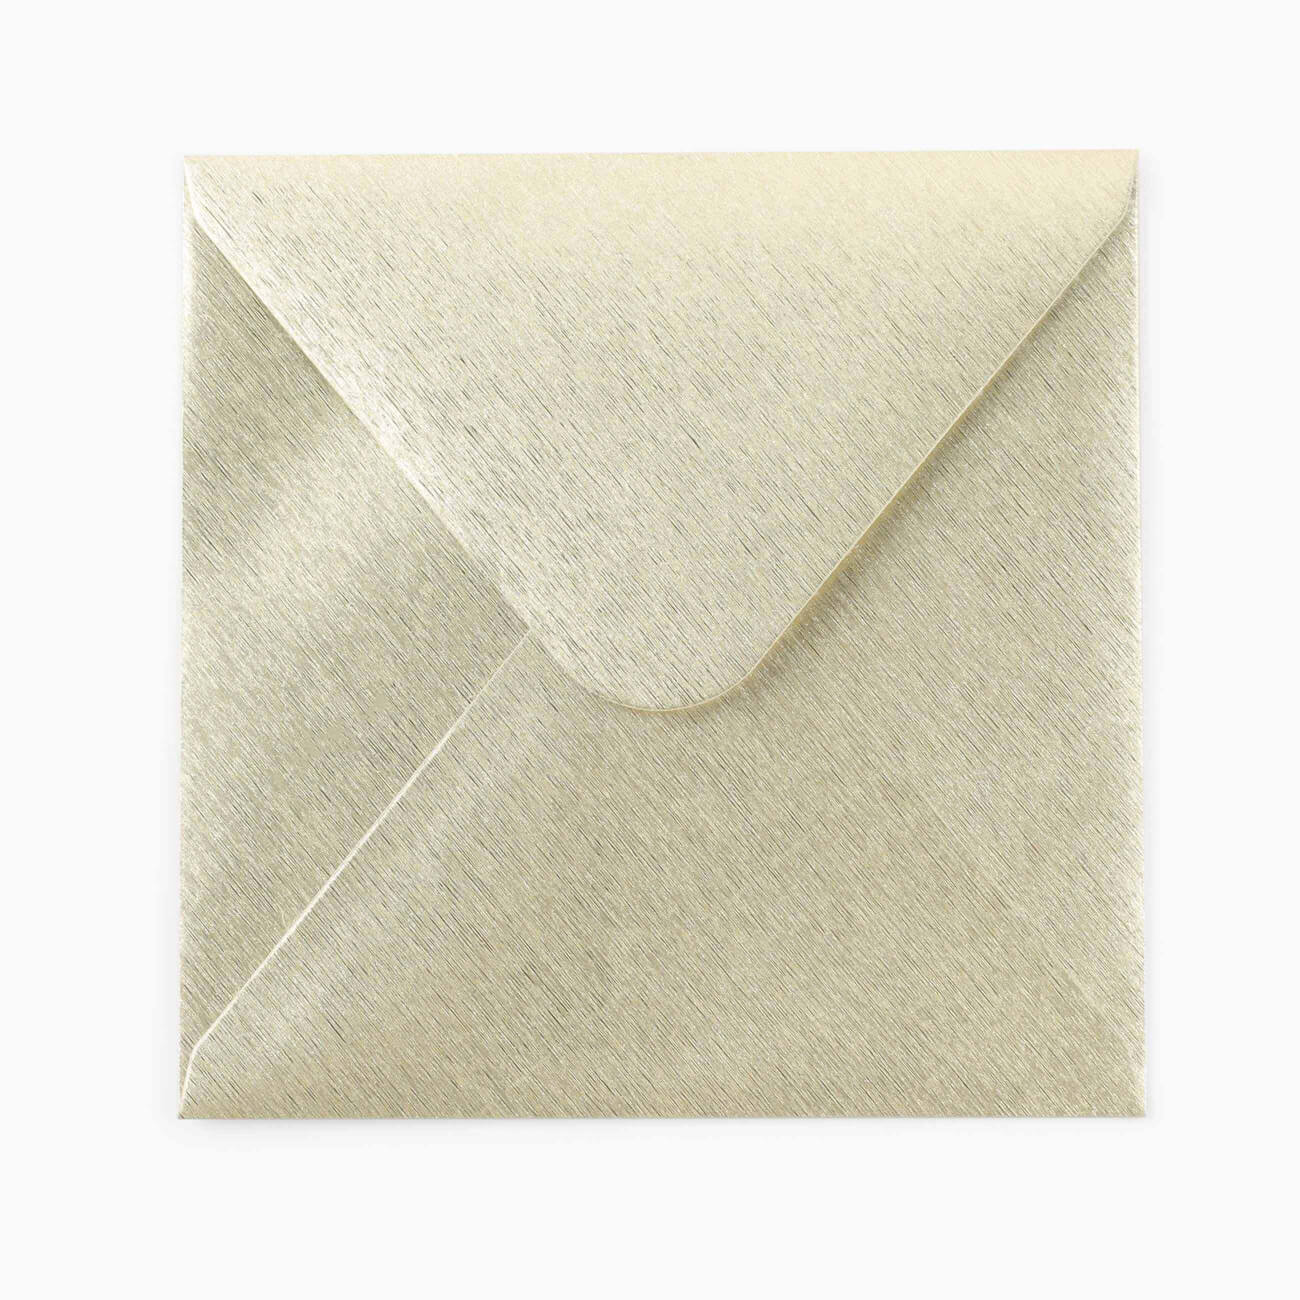 Конверт подарочный, 15 см, бумага, квадратный, золотистый, Congrats конверт lamark